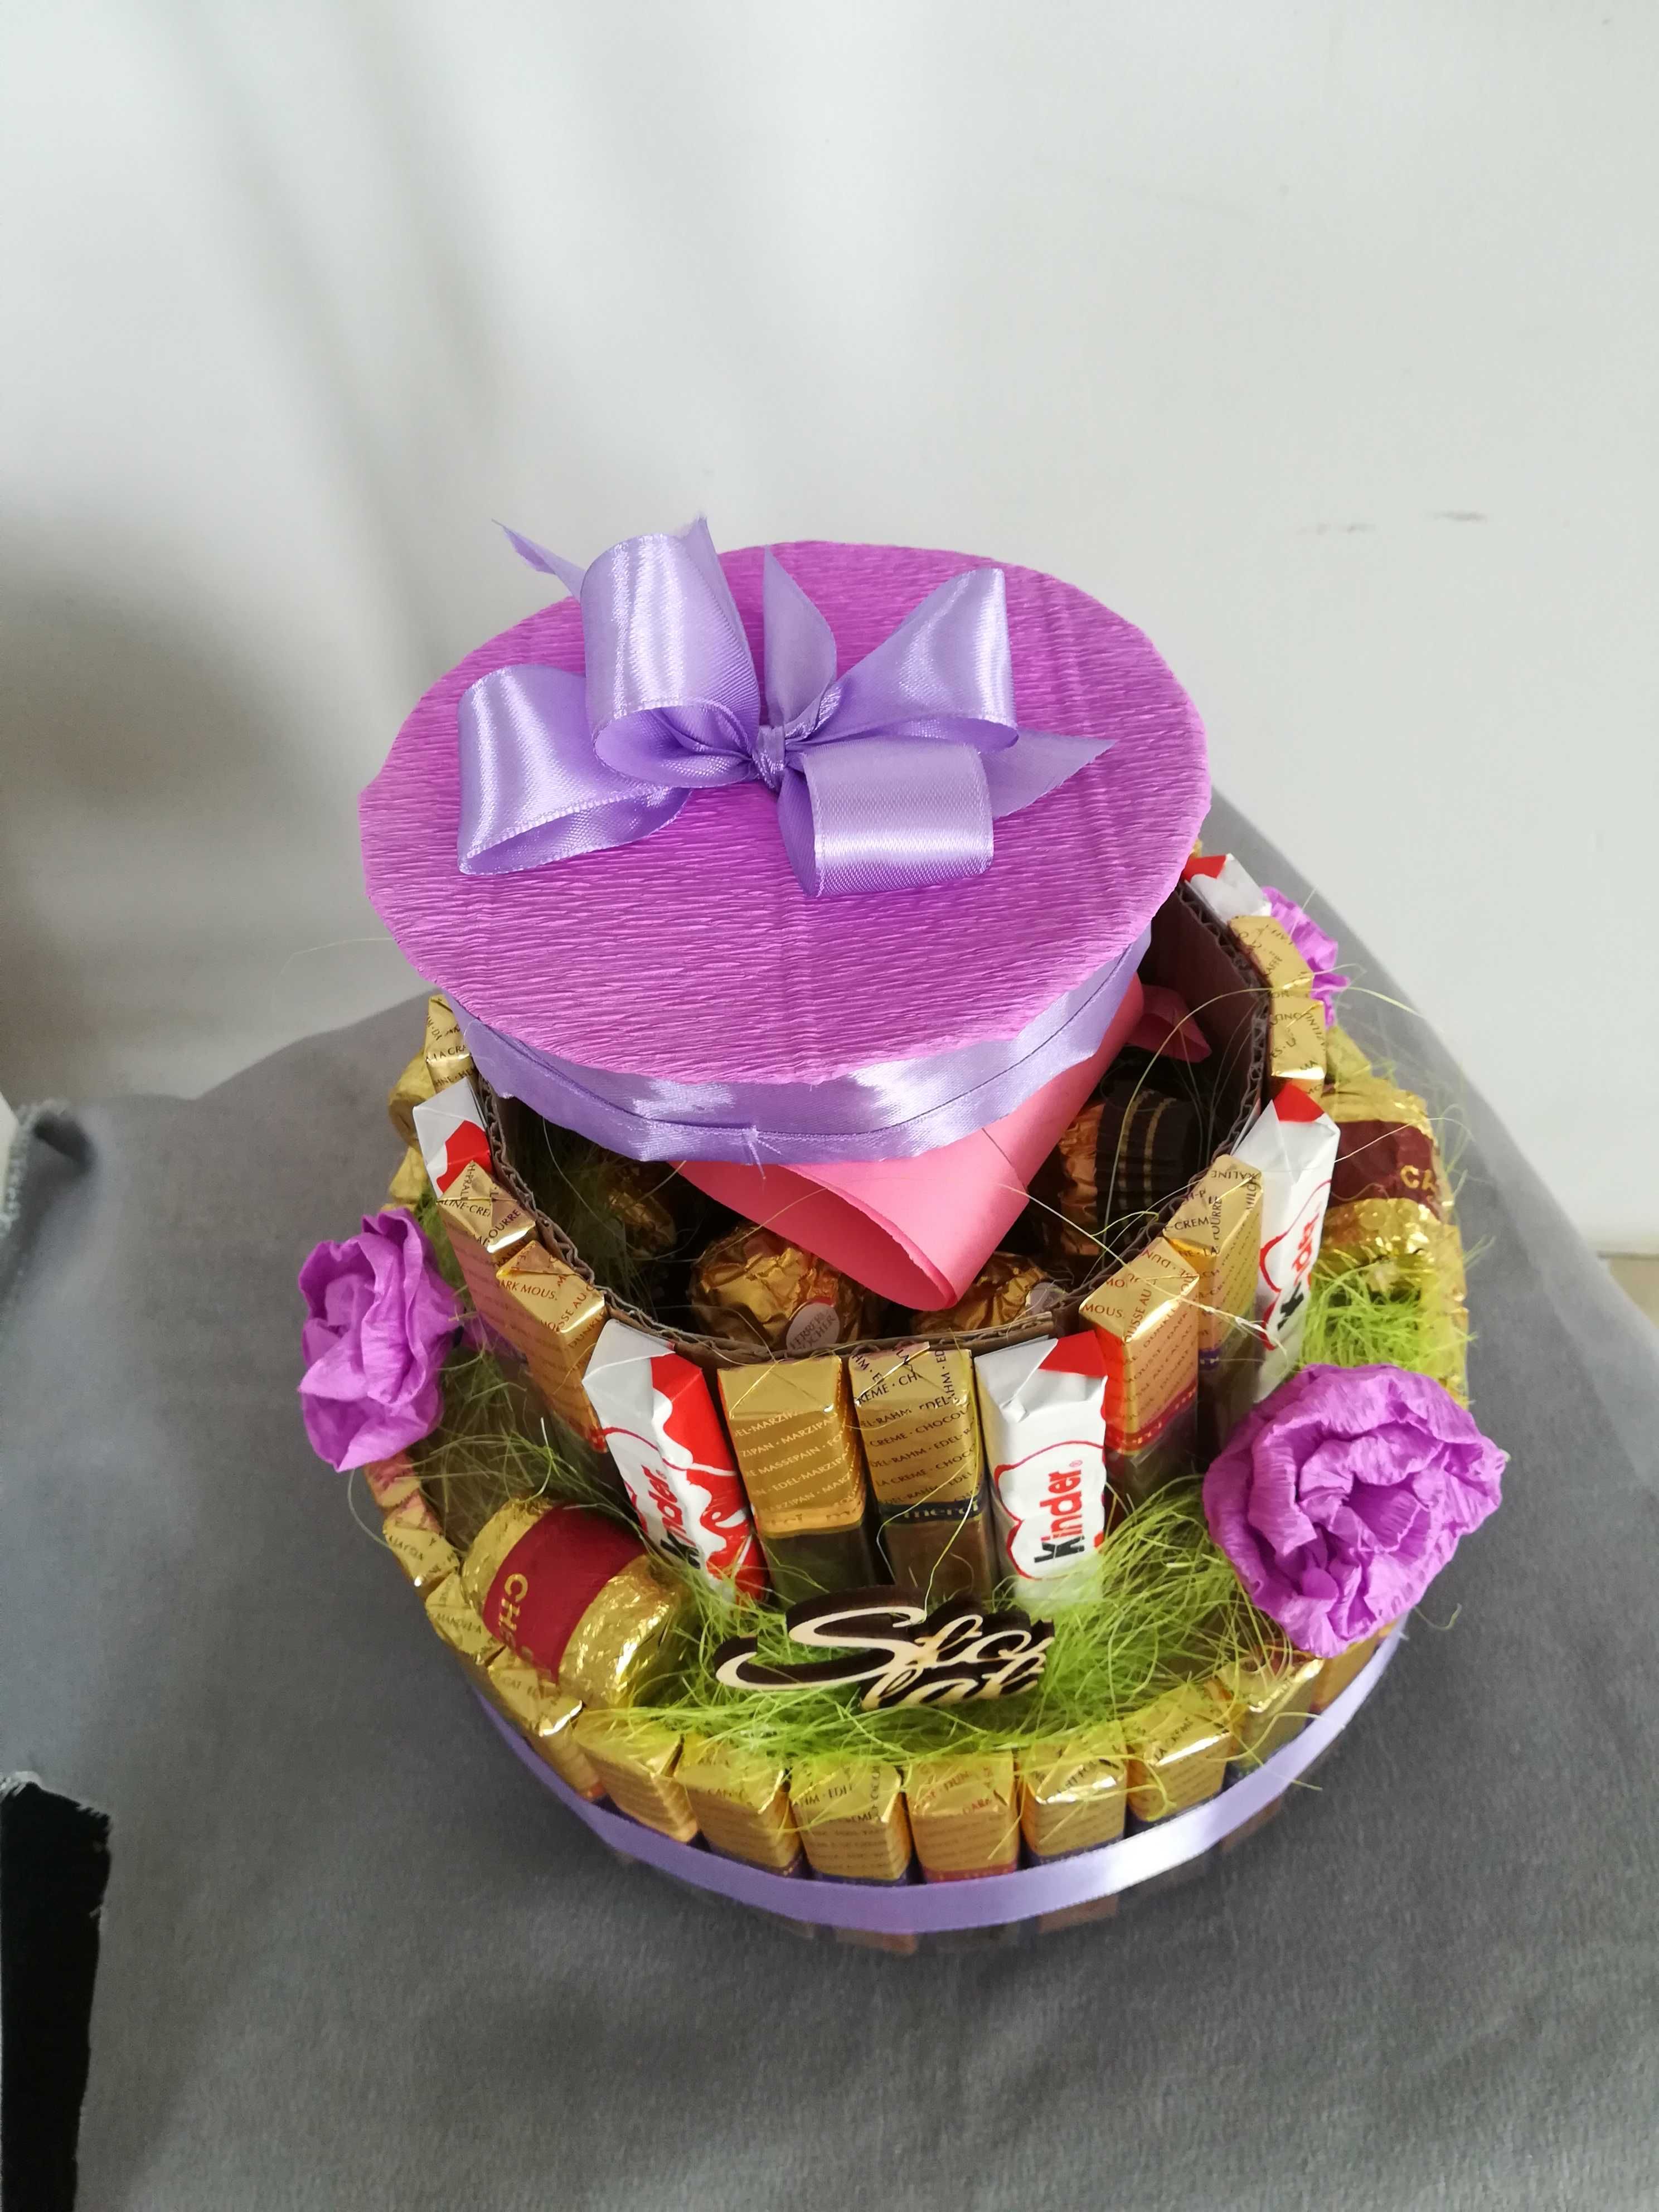 Dwupiętrowy tort pudełko wykonany ze słodyczy.